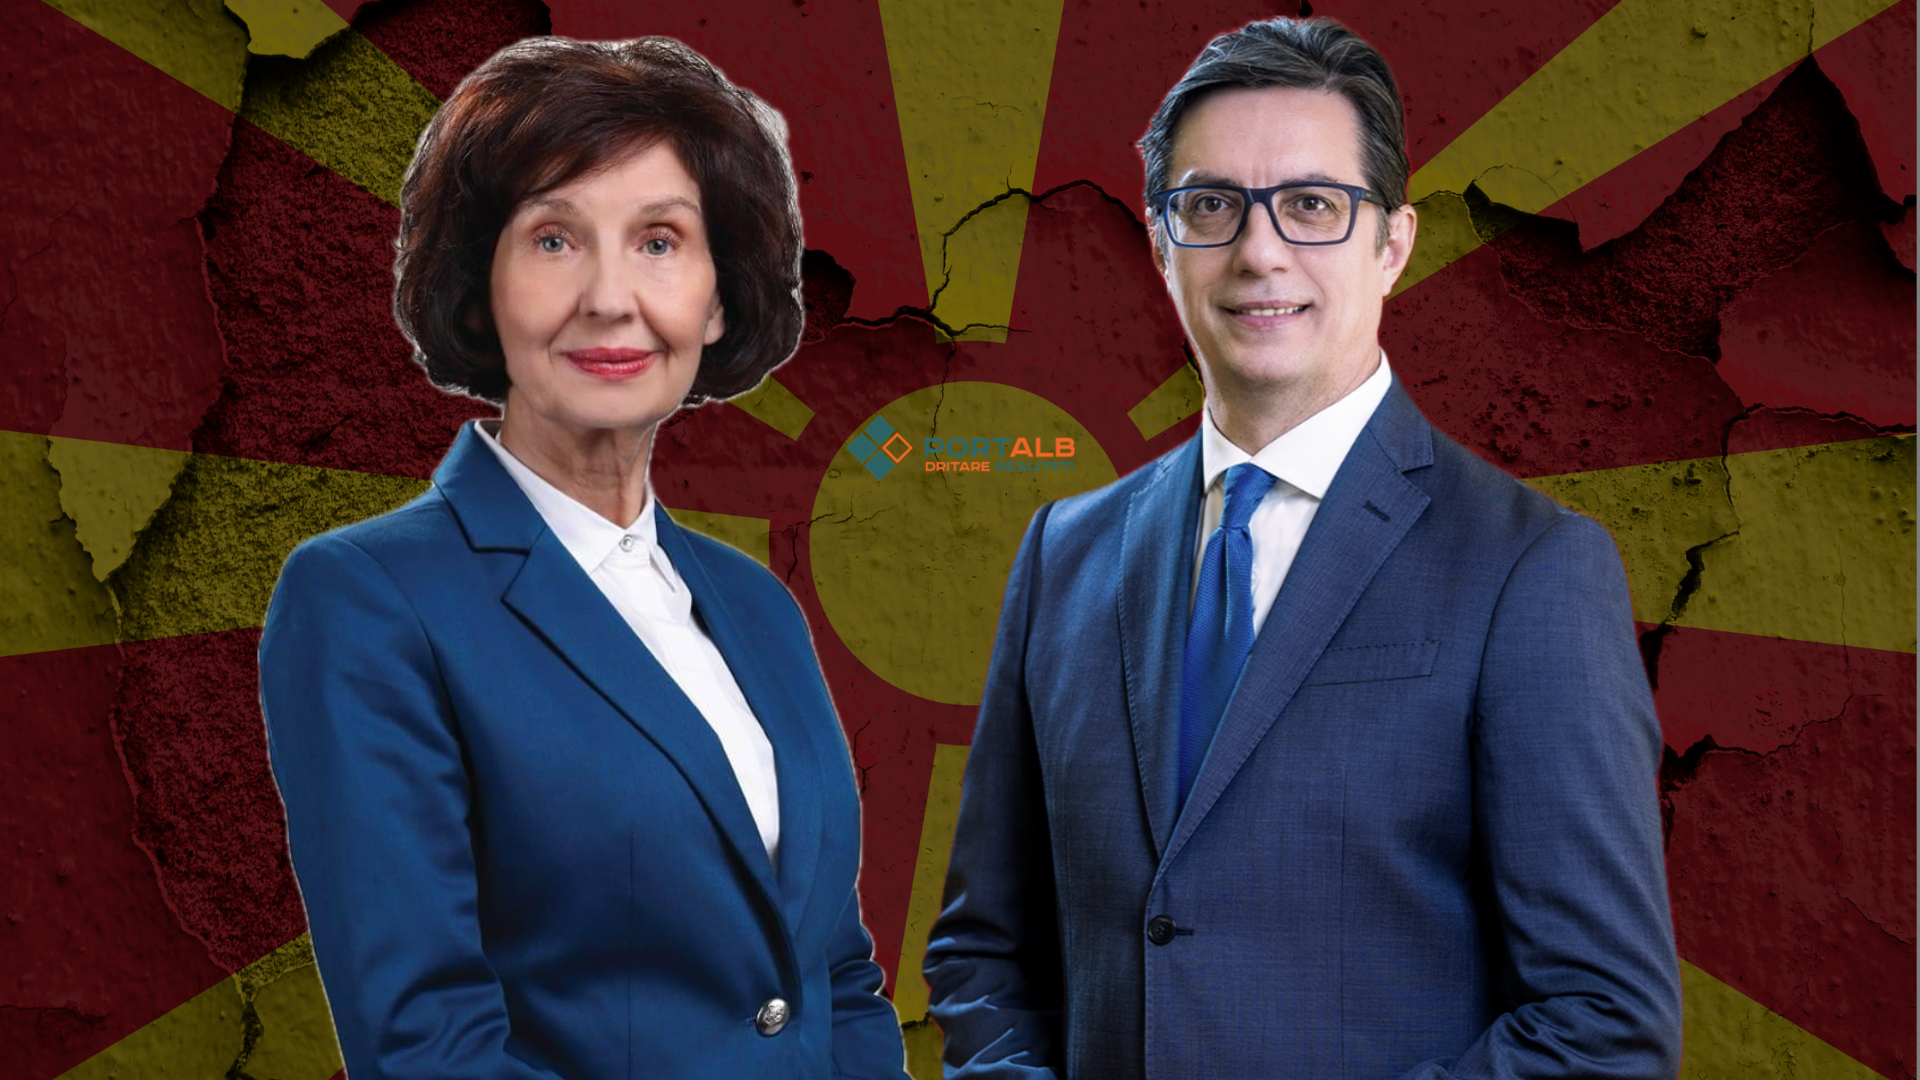 Kandidatët për presidentë të RMV-së: Gordana Siljanovska Davkova dhe Stevo Pendarovski. Foto ilustrim nga Fisnik Xhelili/Portalb.mk (Fotoja në prapavi nga Canva)